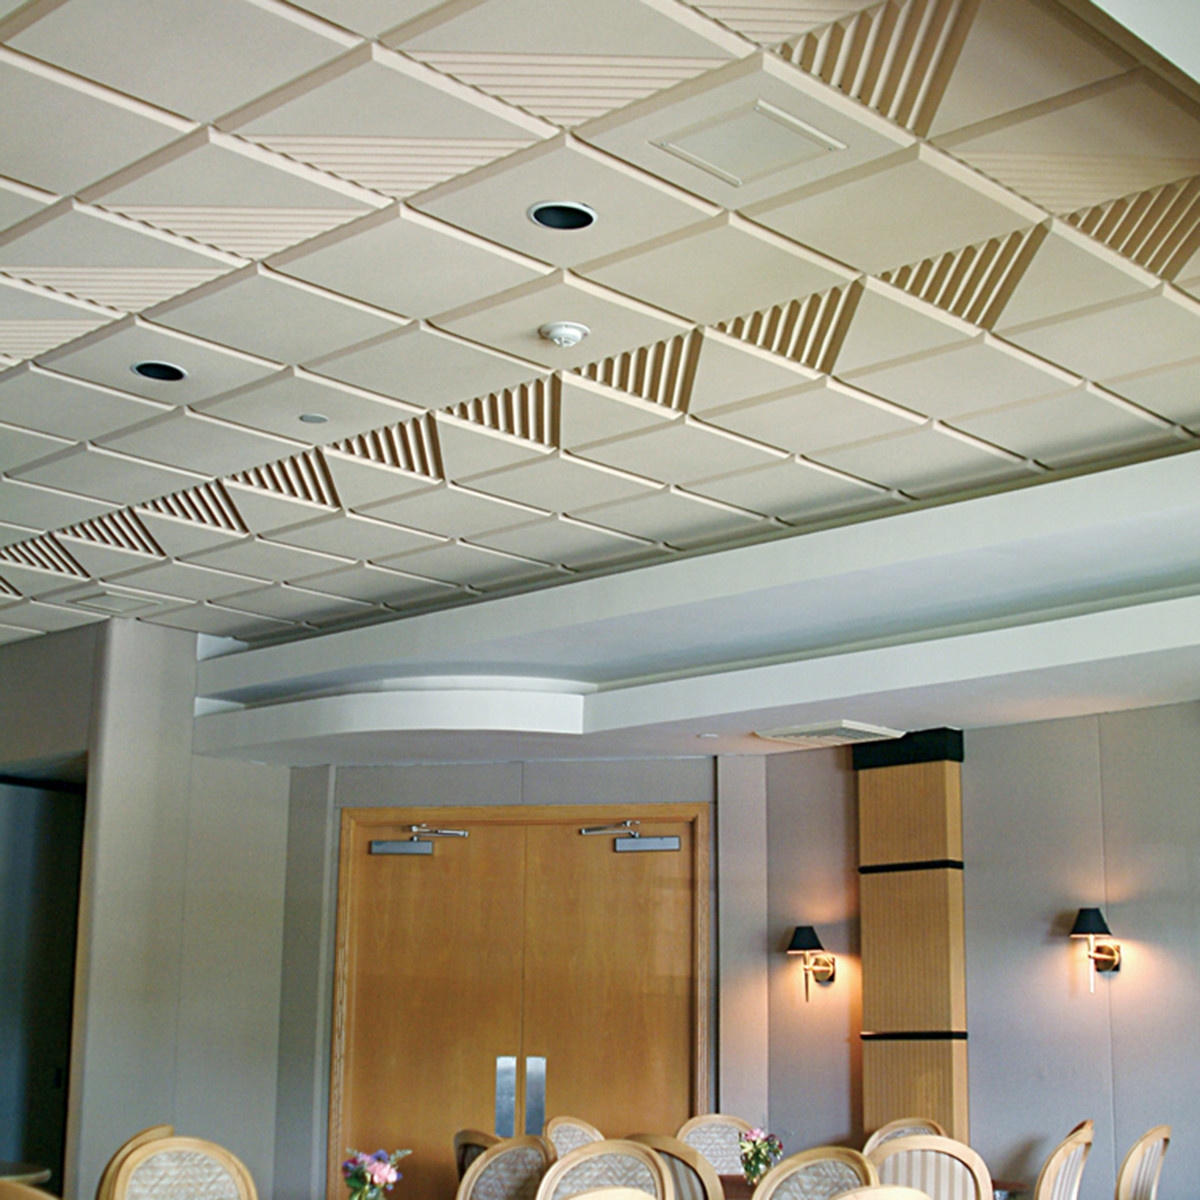 Sound Deadening Acoustical Ceiling Tiles Sound Deadening Acoustical Ceiling Tiles sonex contour ceiling tile acoustical solutions 1200 X 1200